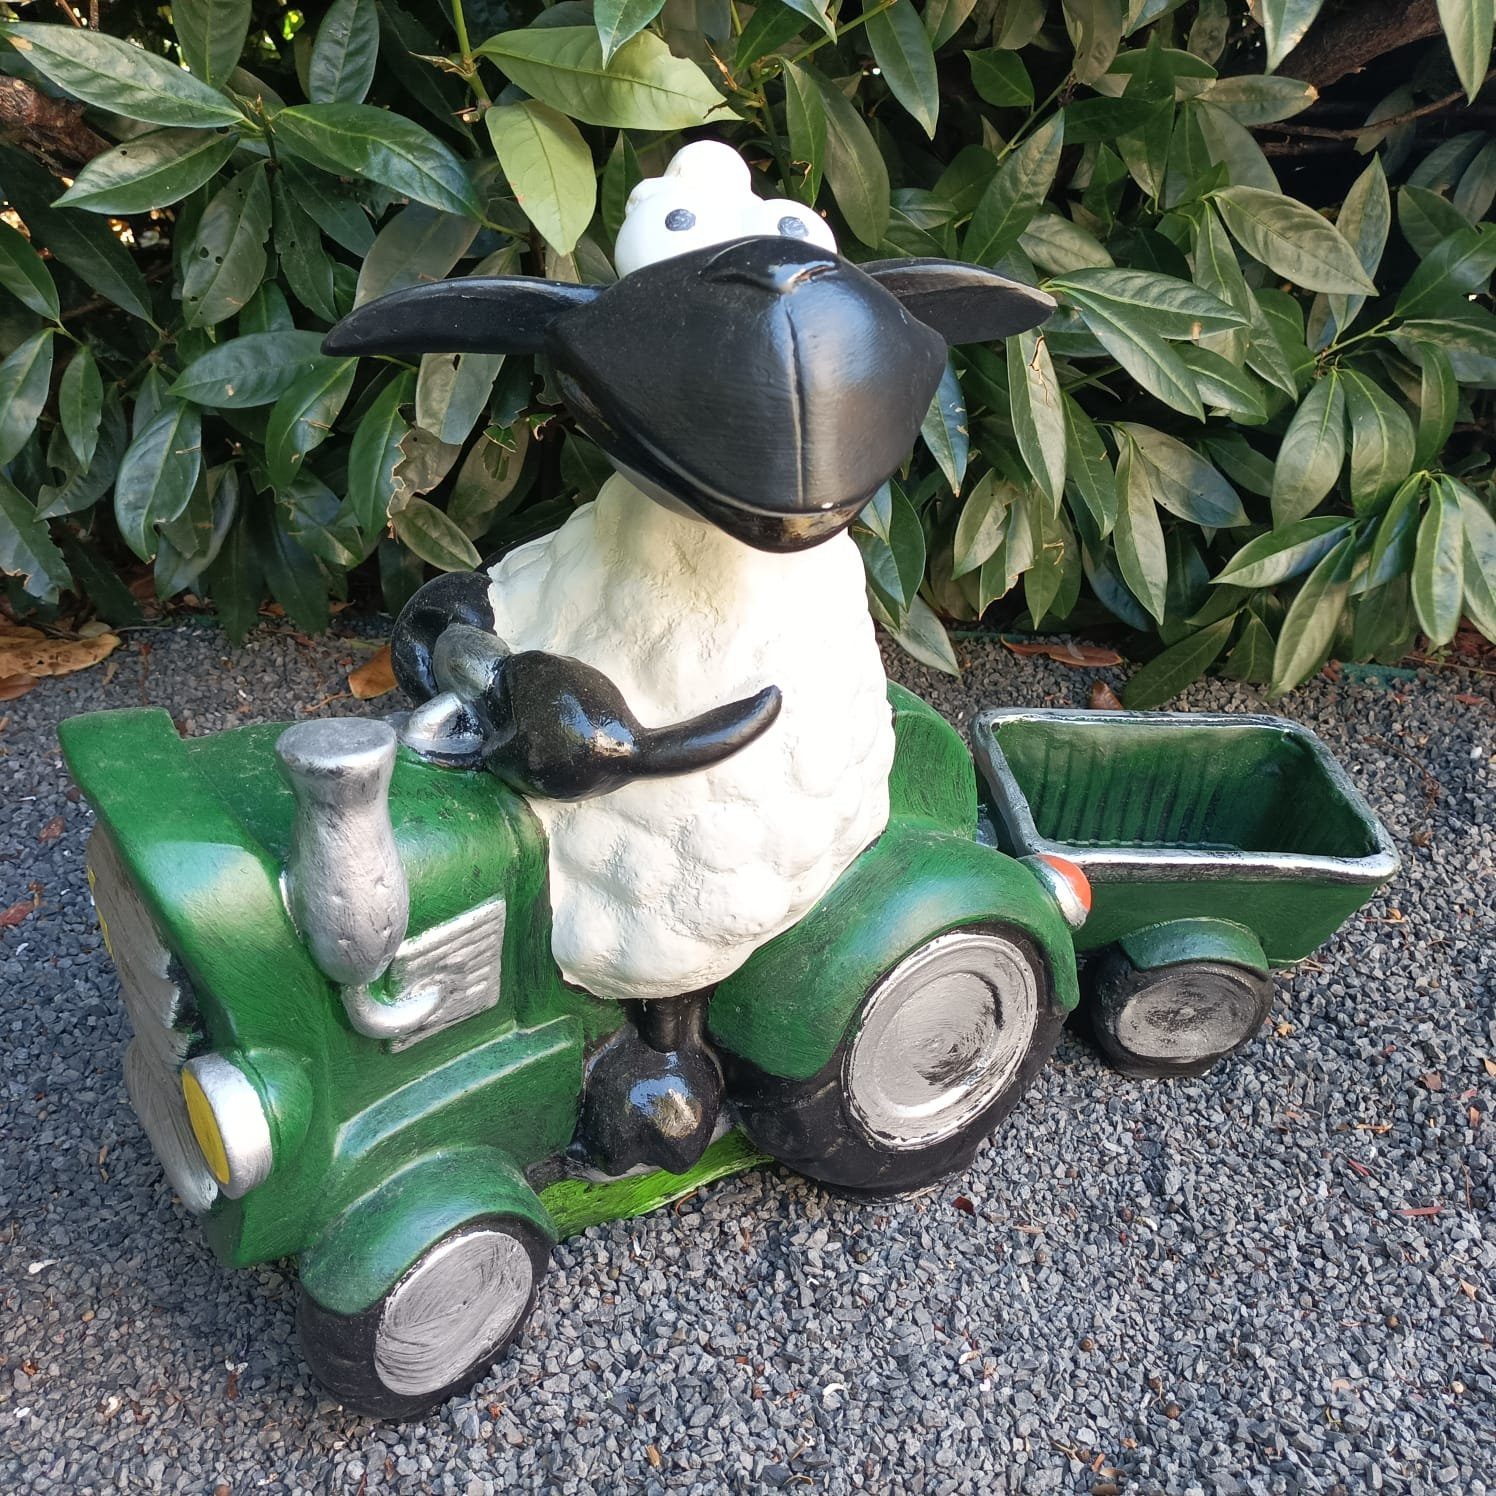 44 cm Aspinaworld wetterfest mit Schaf Figur Gartenfigur auf grünem Traktor Anhänger Molly